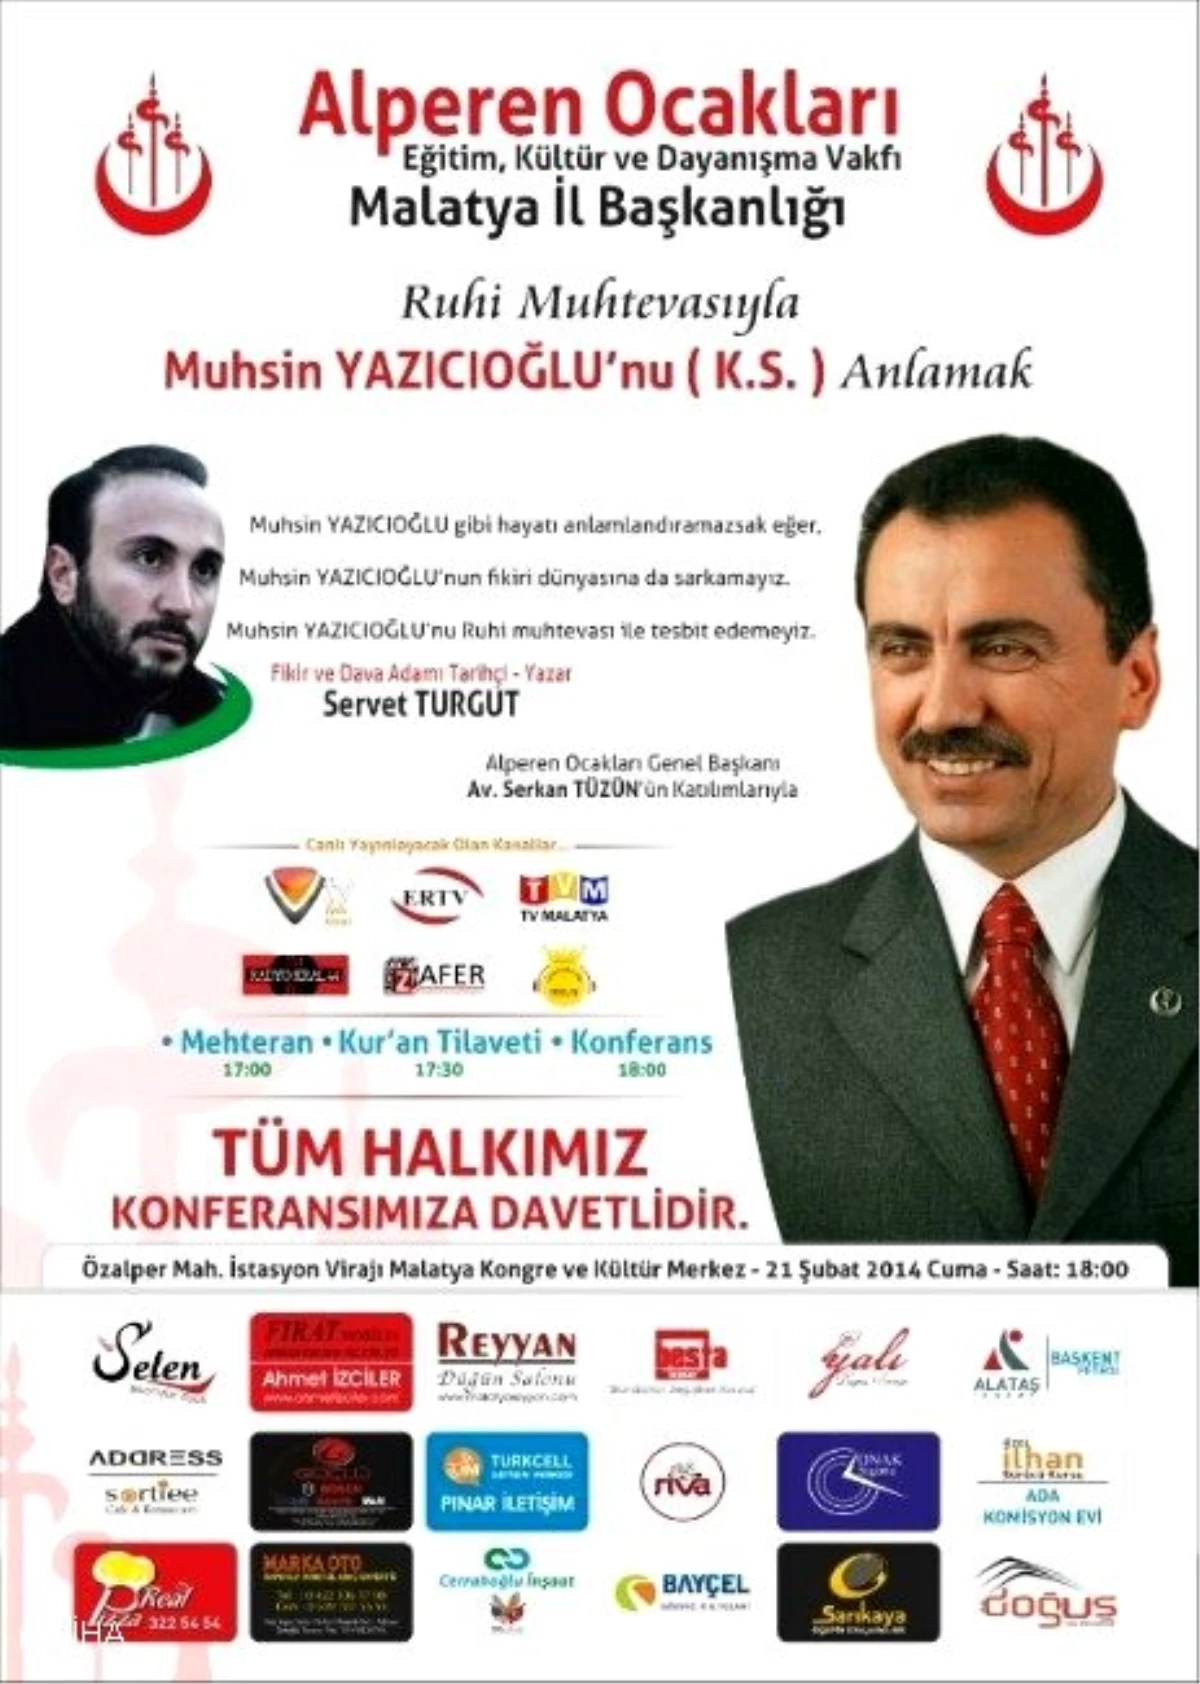 Muhsin Yazıcıoğlu\'nu Anlamak\' Konulu Konferans Düzenlenecek